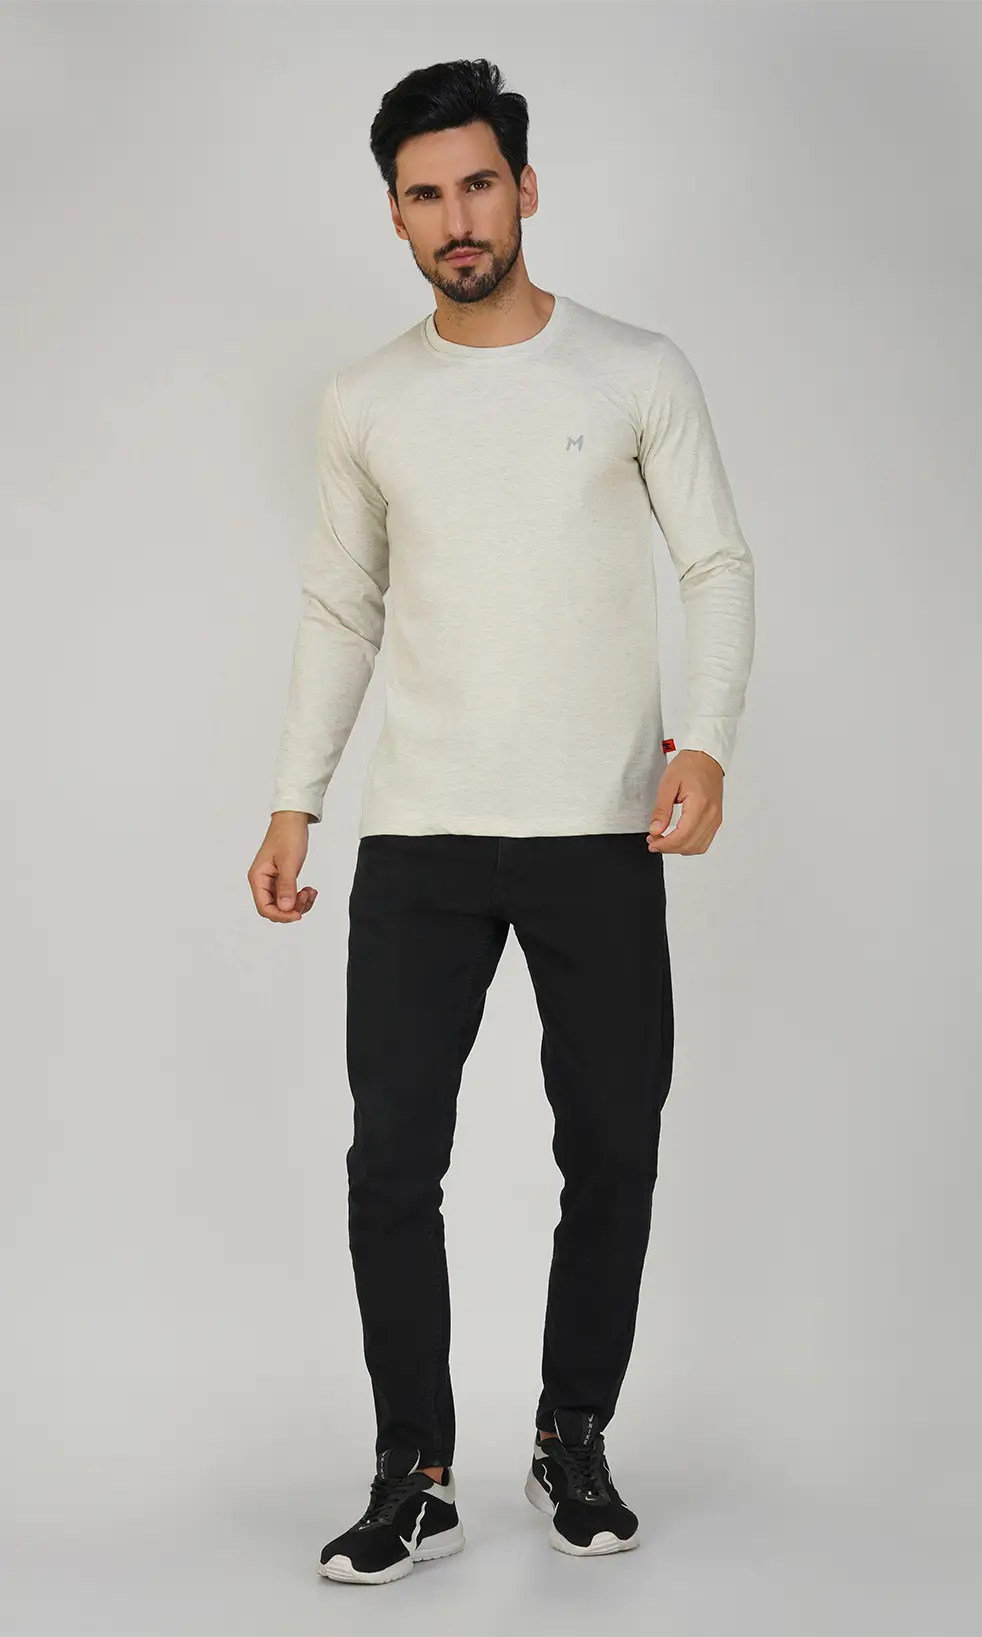 Mebadass Cotton Men's Fullsleeve Regular Size T-shirt - Light Grey